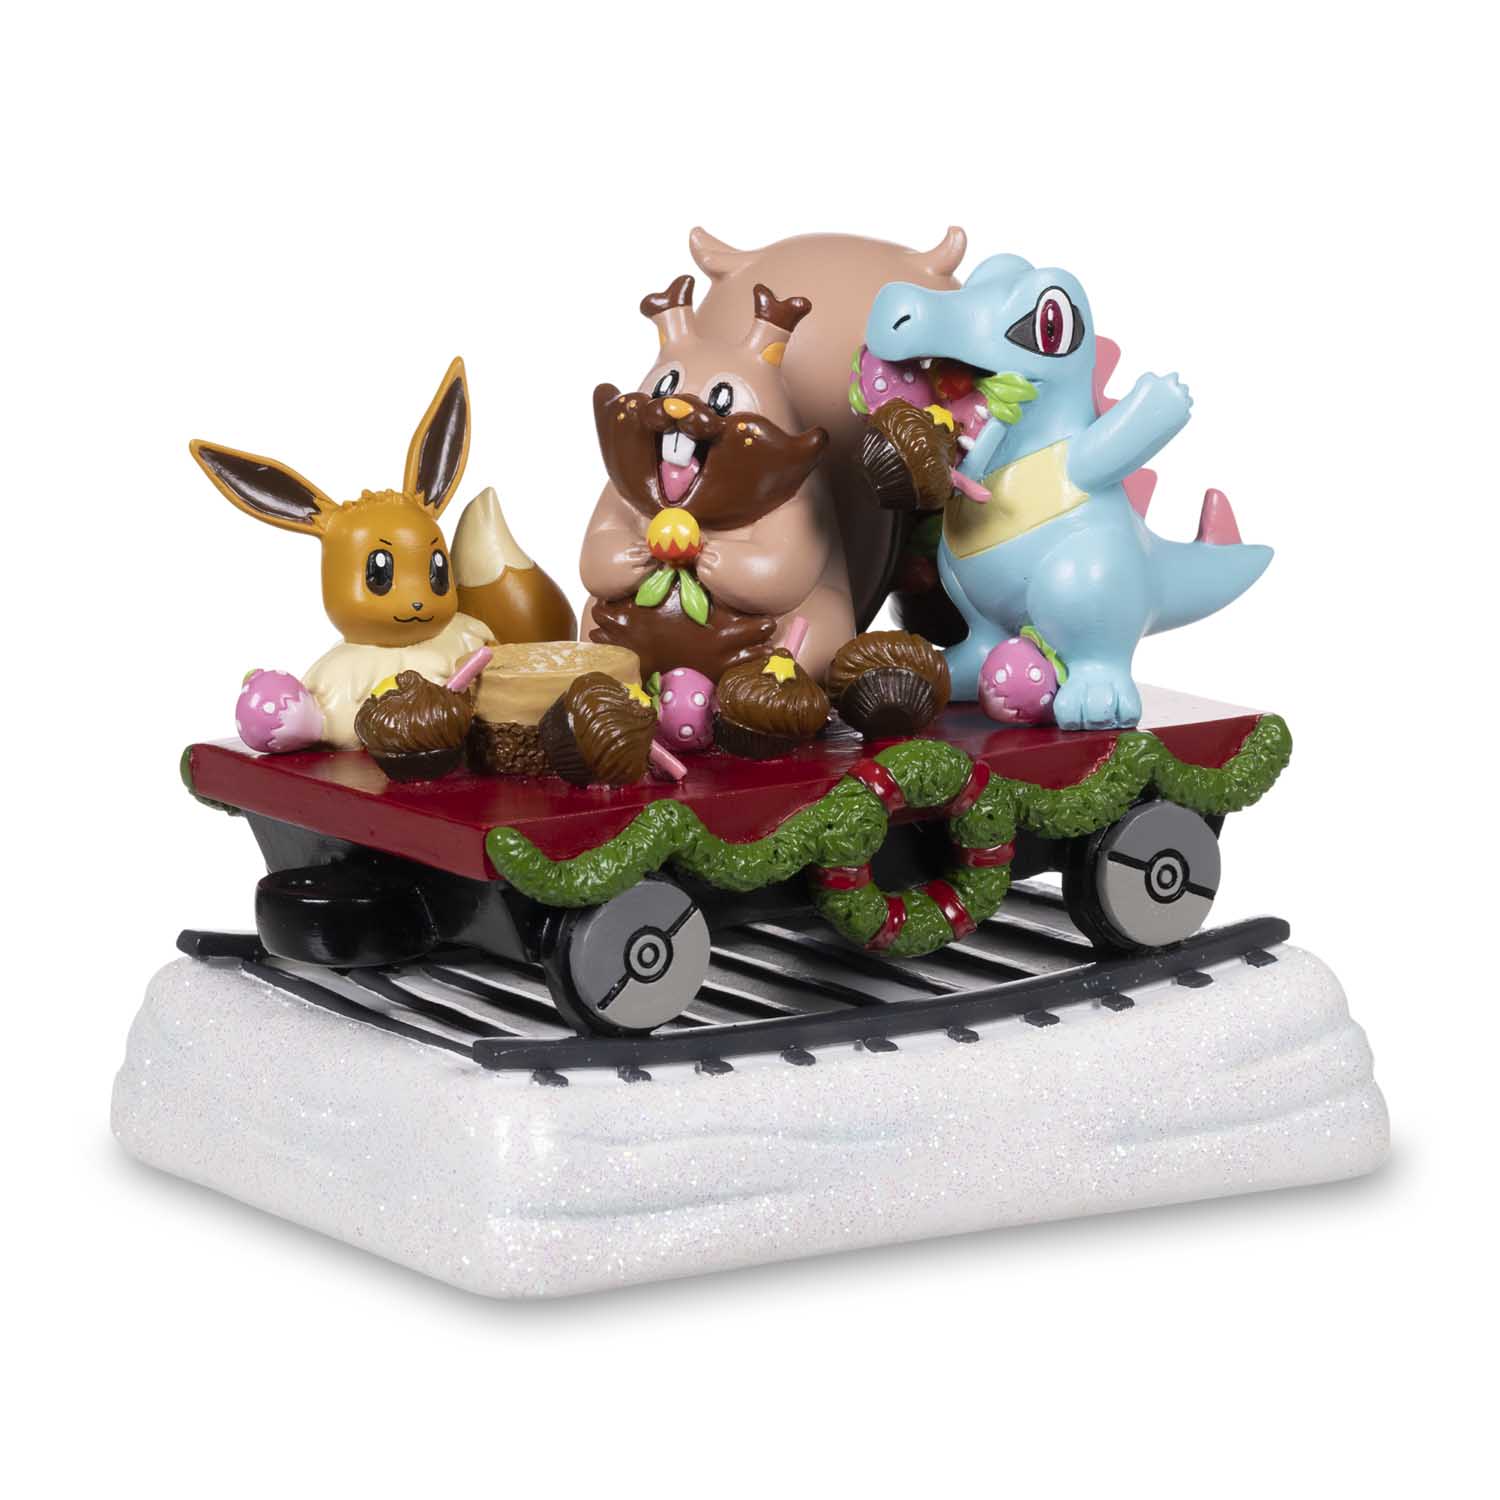 Pokemon Center(ポケモンセンター) / Delibird Holiday Express: Sweets & Treats Flatcar Figure /  ヨクバリス、ワニノコ、イーブイ